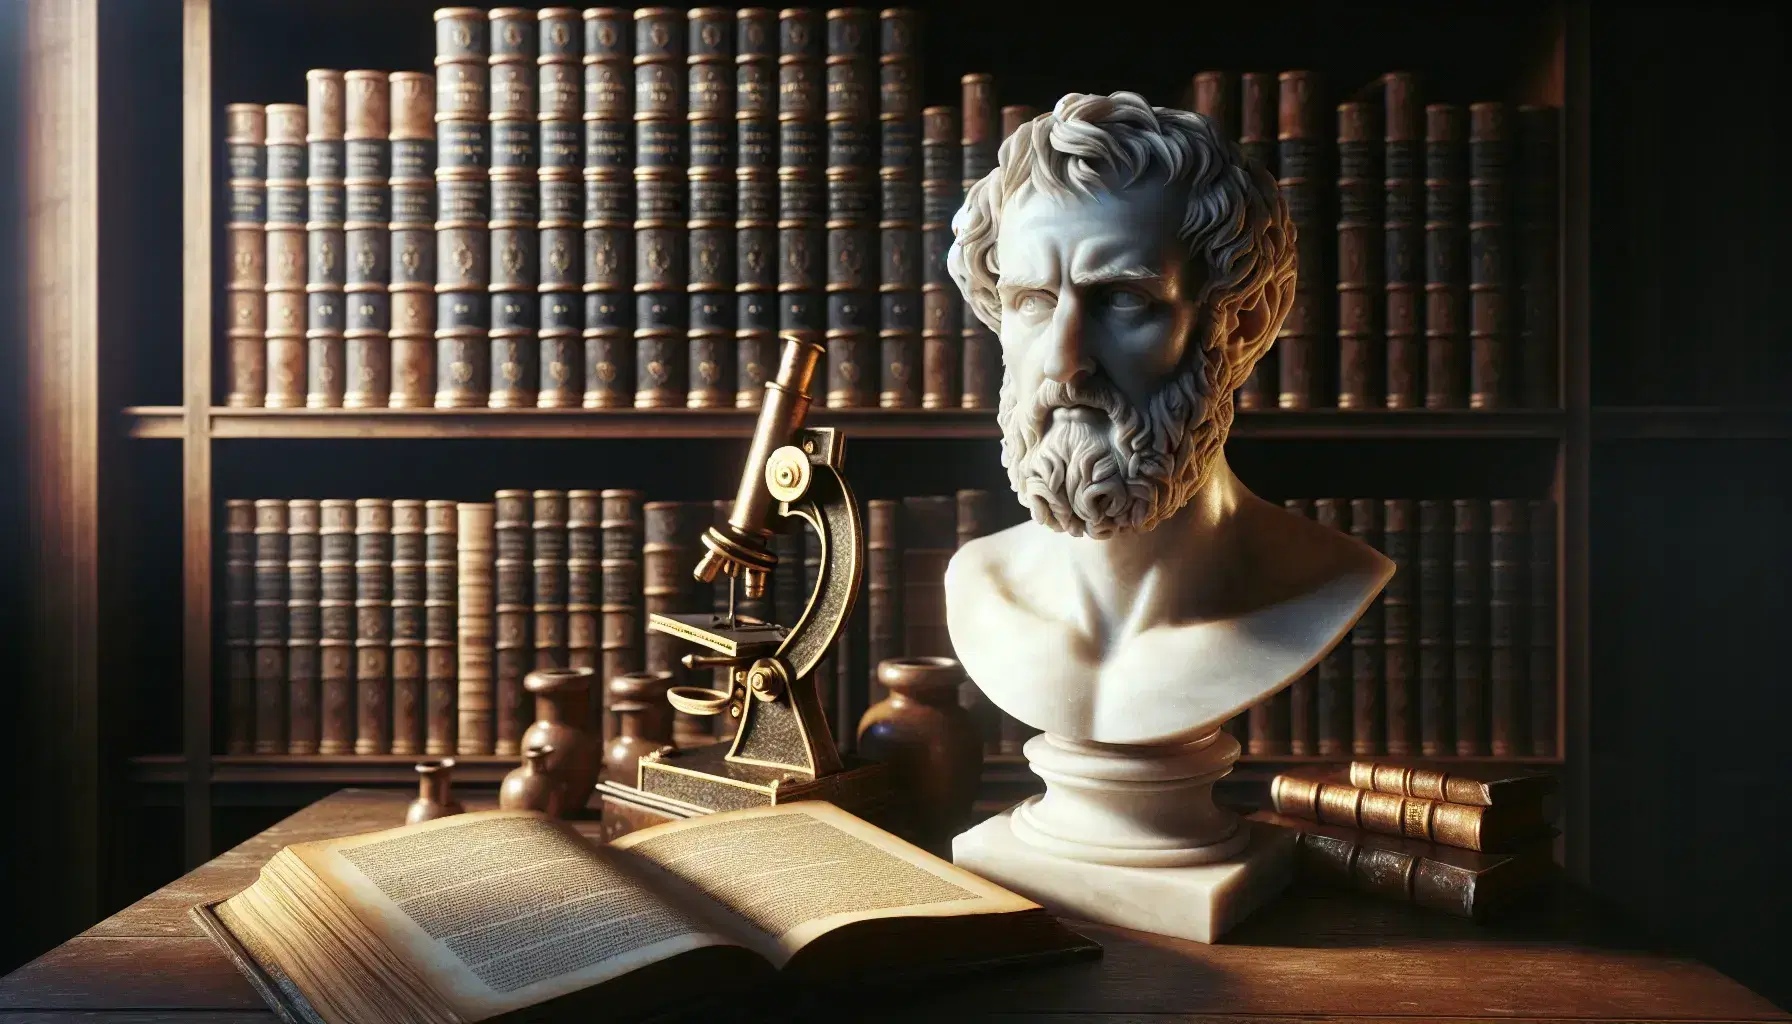 Busto in marmo bianco di filosofo celebre con barba corta e fronte alta, accanto a microscopio antico in ottone su sfondo sfocato di libreria.